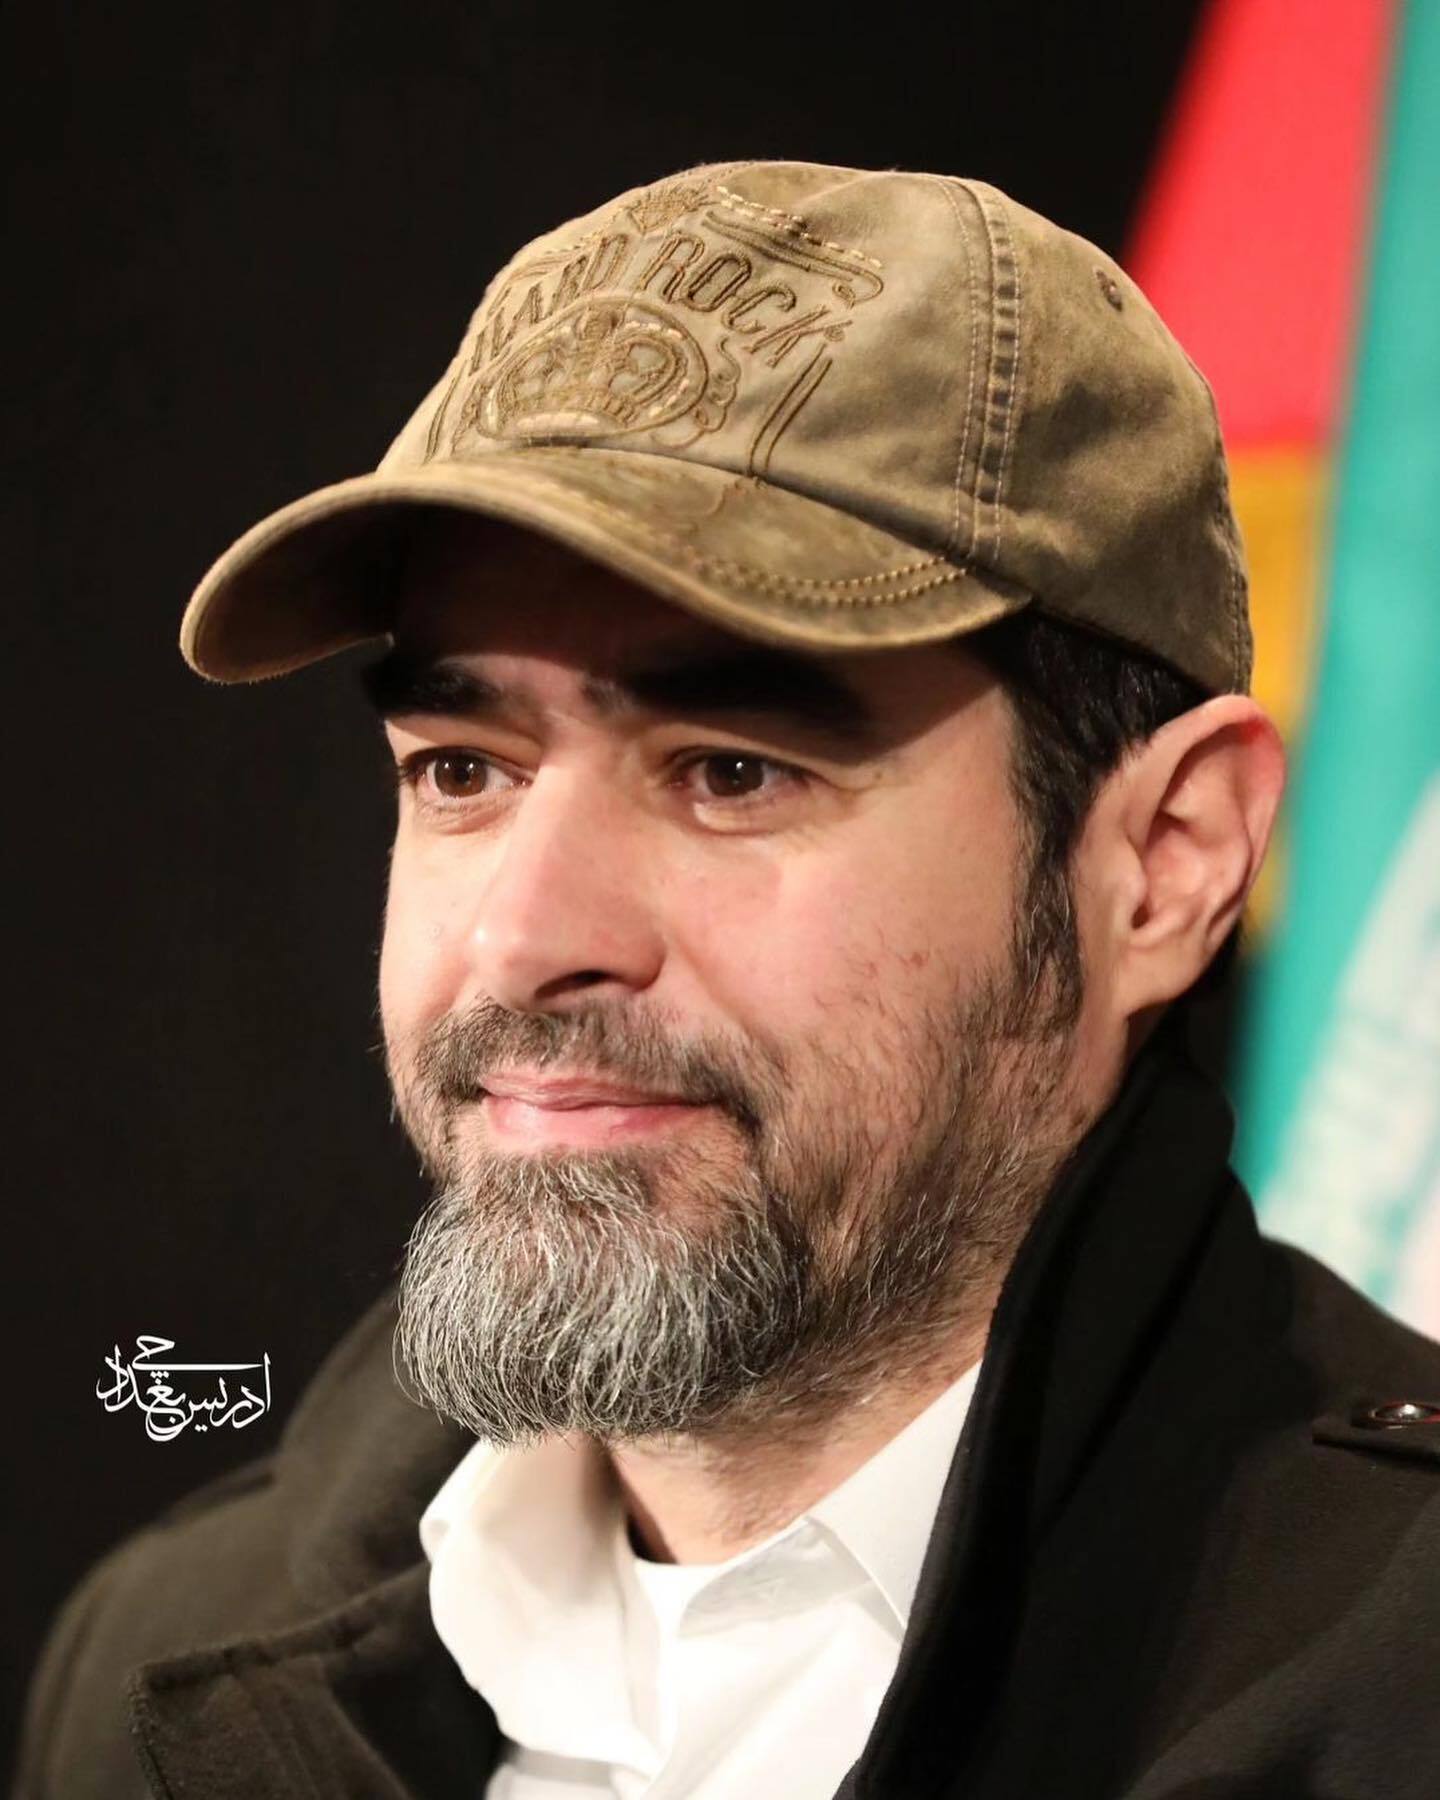 تغییر چهره شدید شهاب حسینی كاربران را حیرت زده کرد! (عكس)